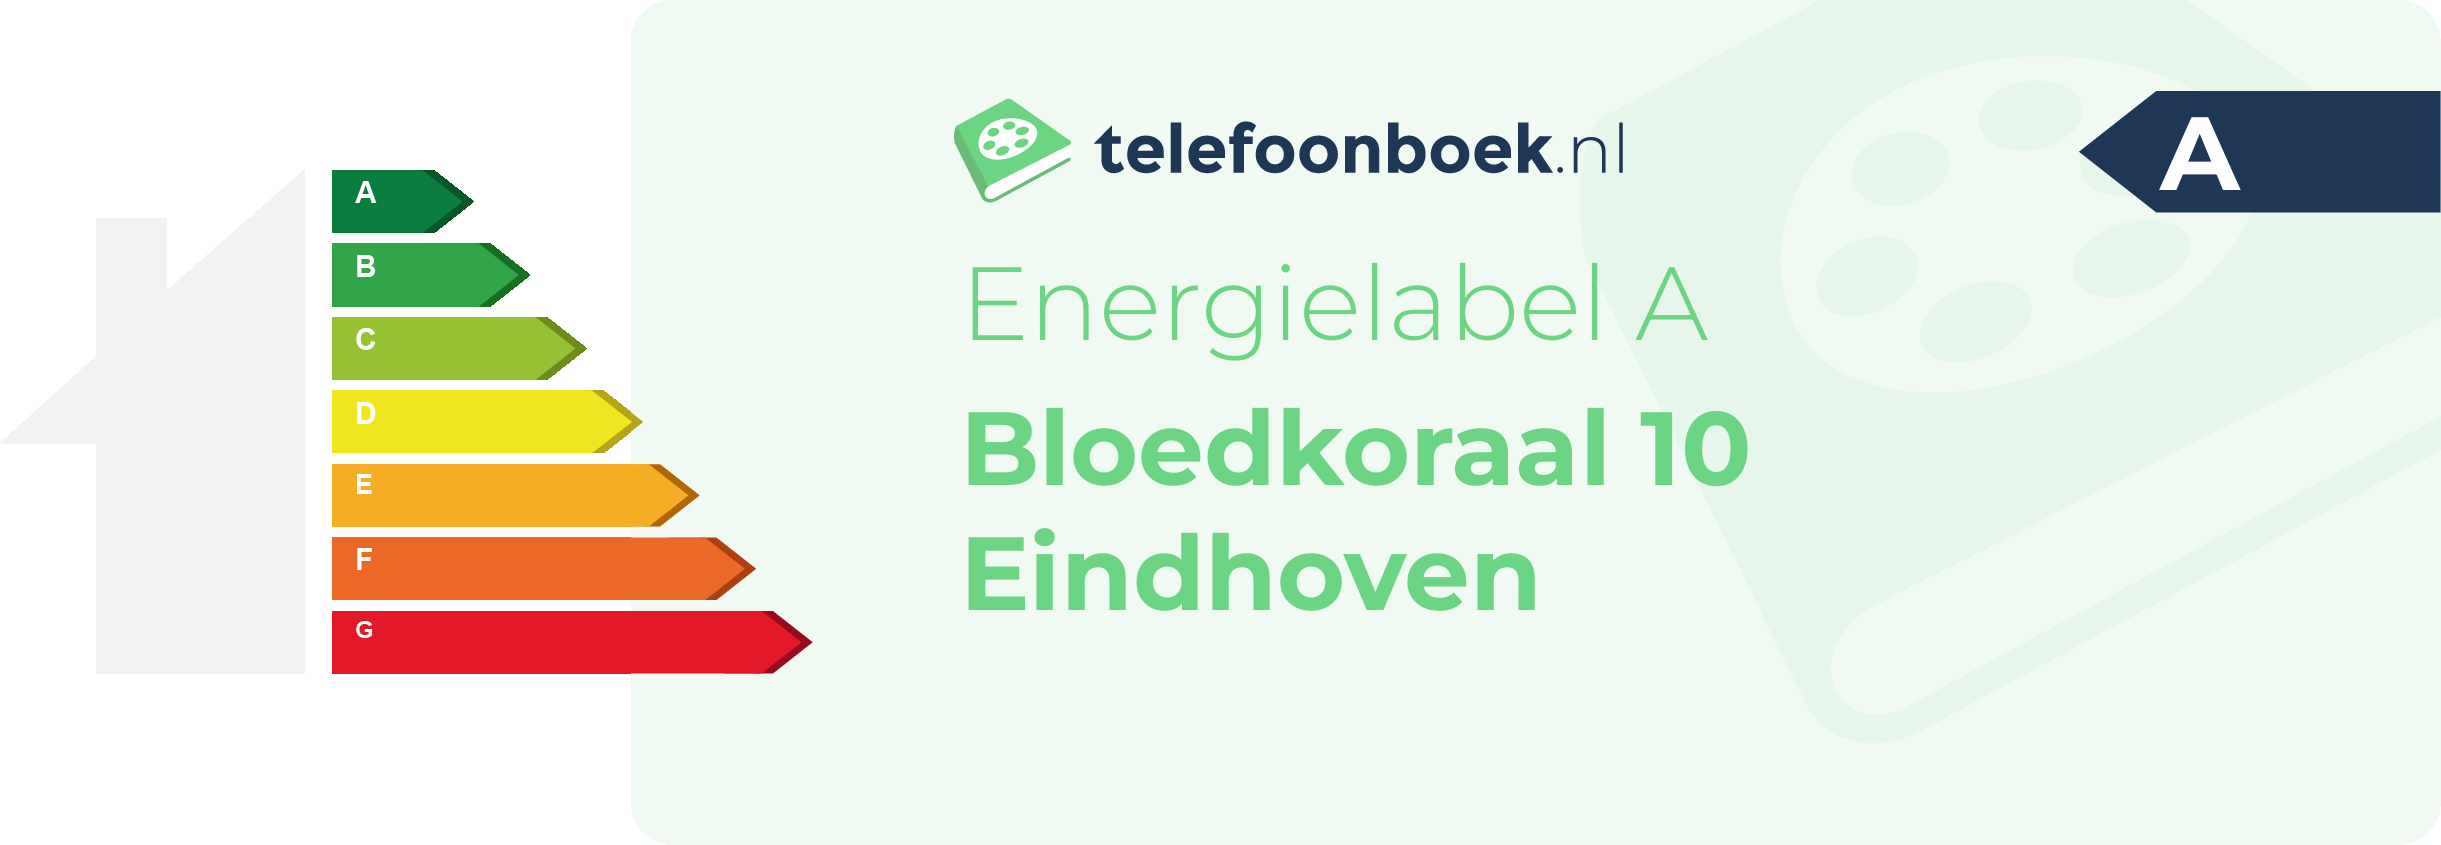 Energielabel Bloedkoraal 10 Eindhoven